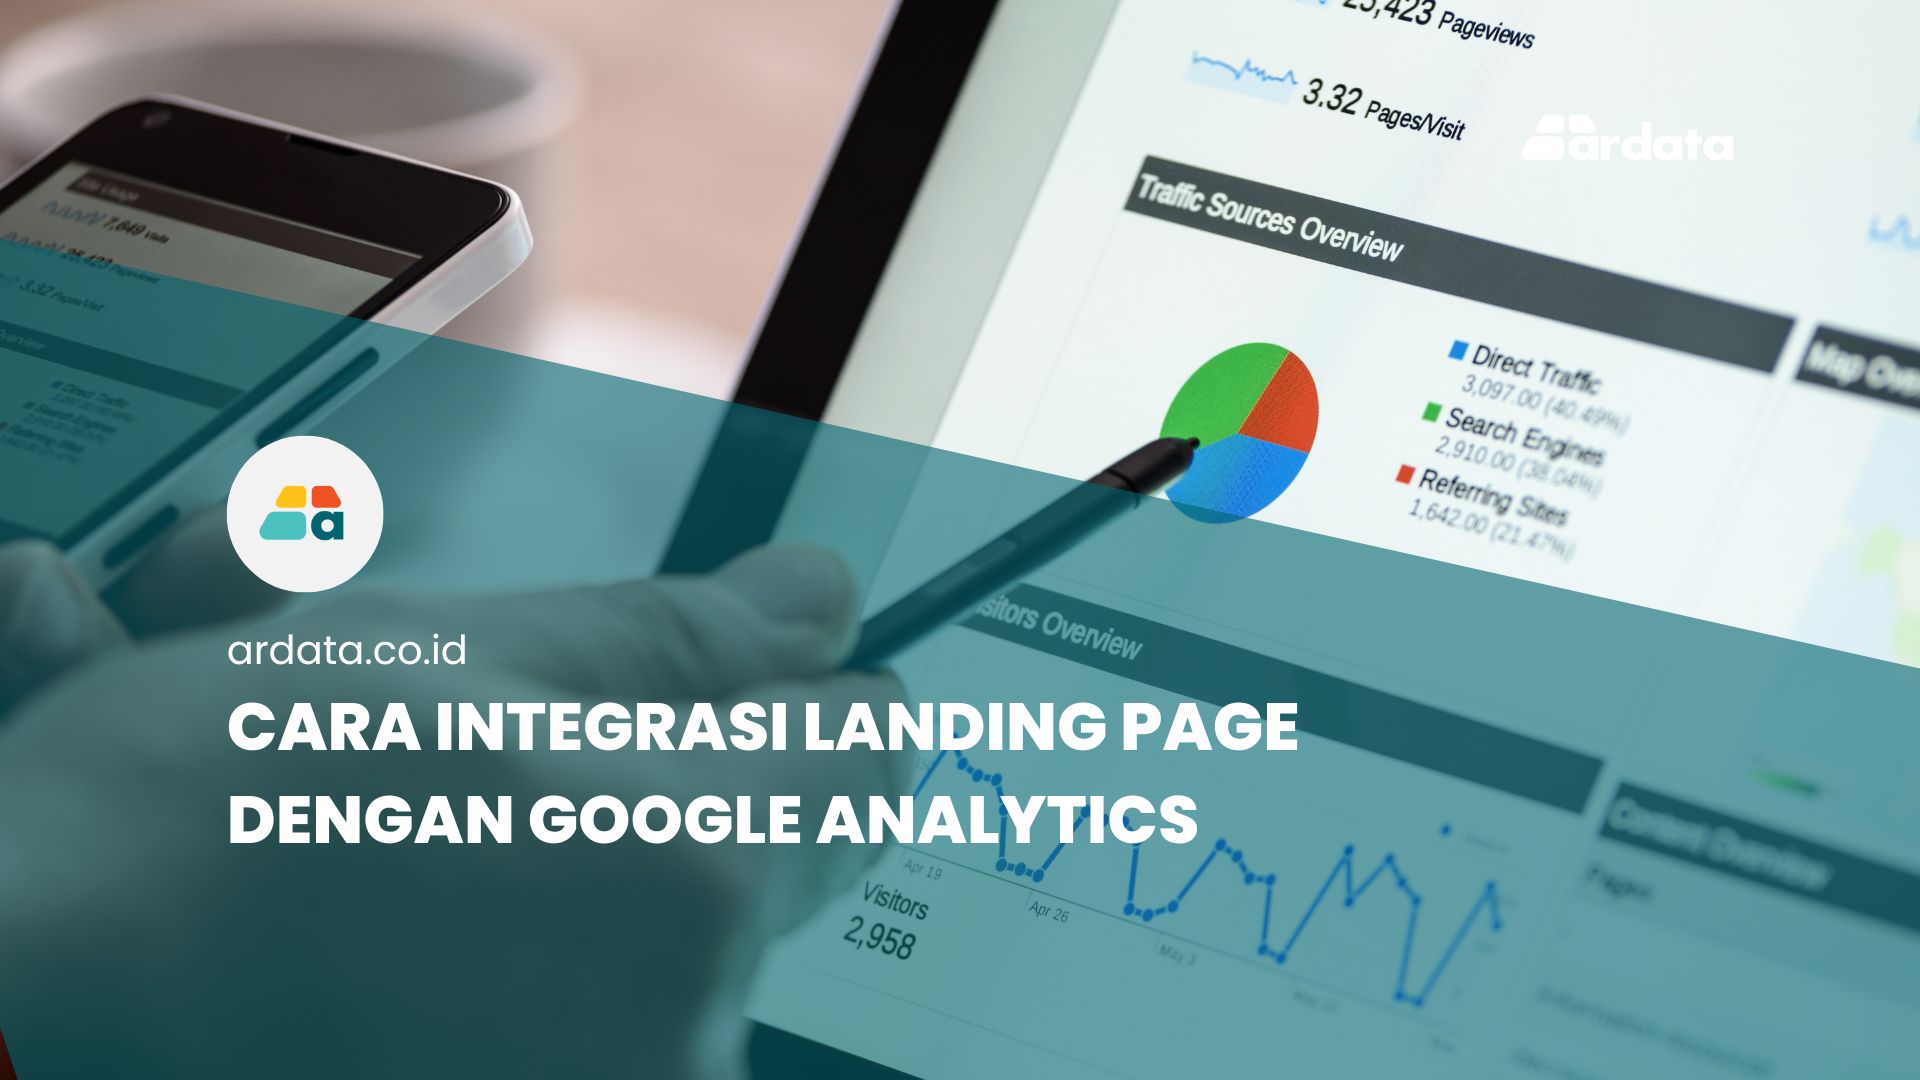 Cara Integrasi Landing Page dengan Google Analytics - Feature Image